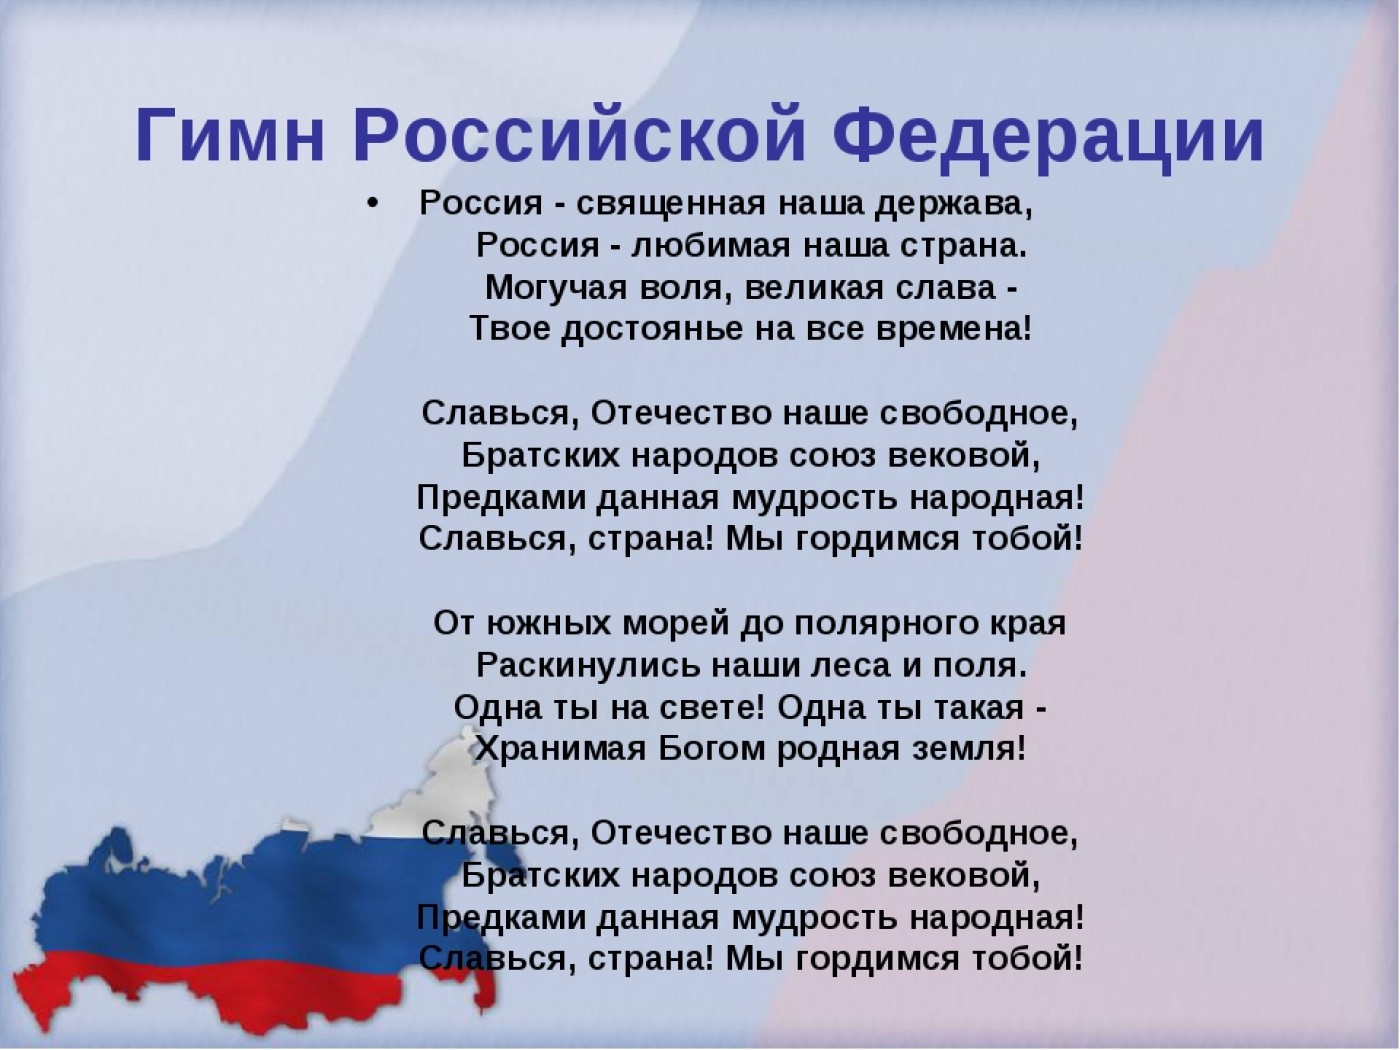 Текст гимна России Российской Федерации